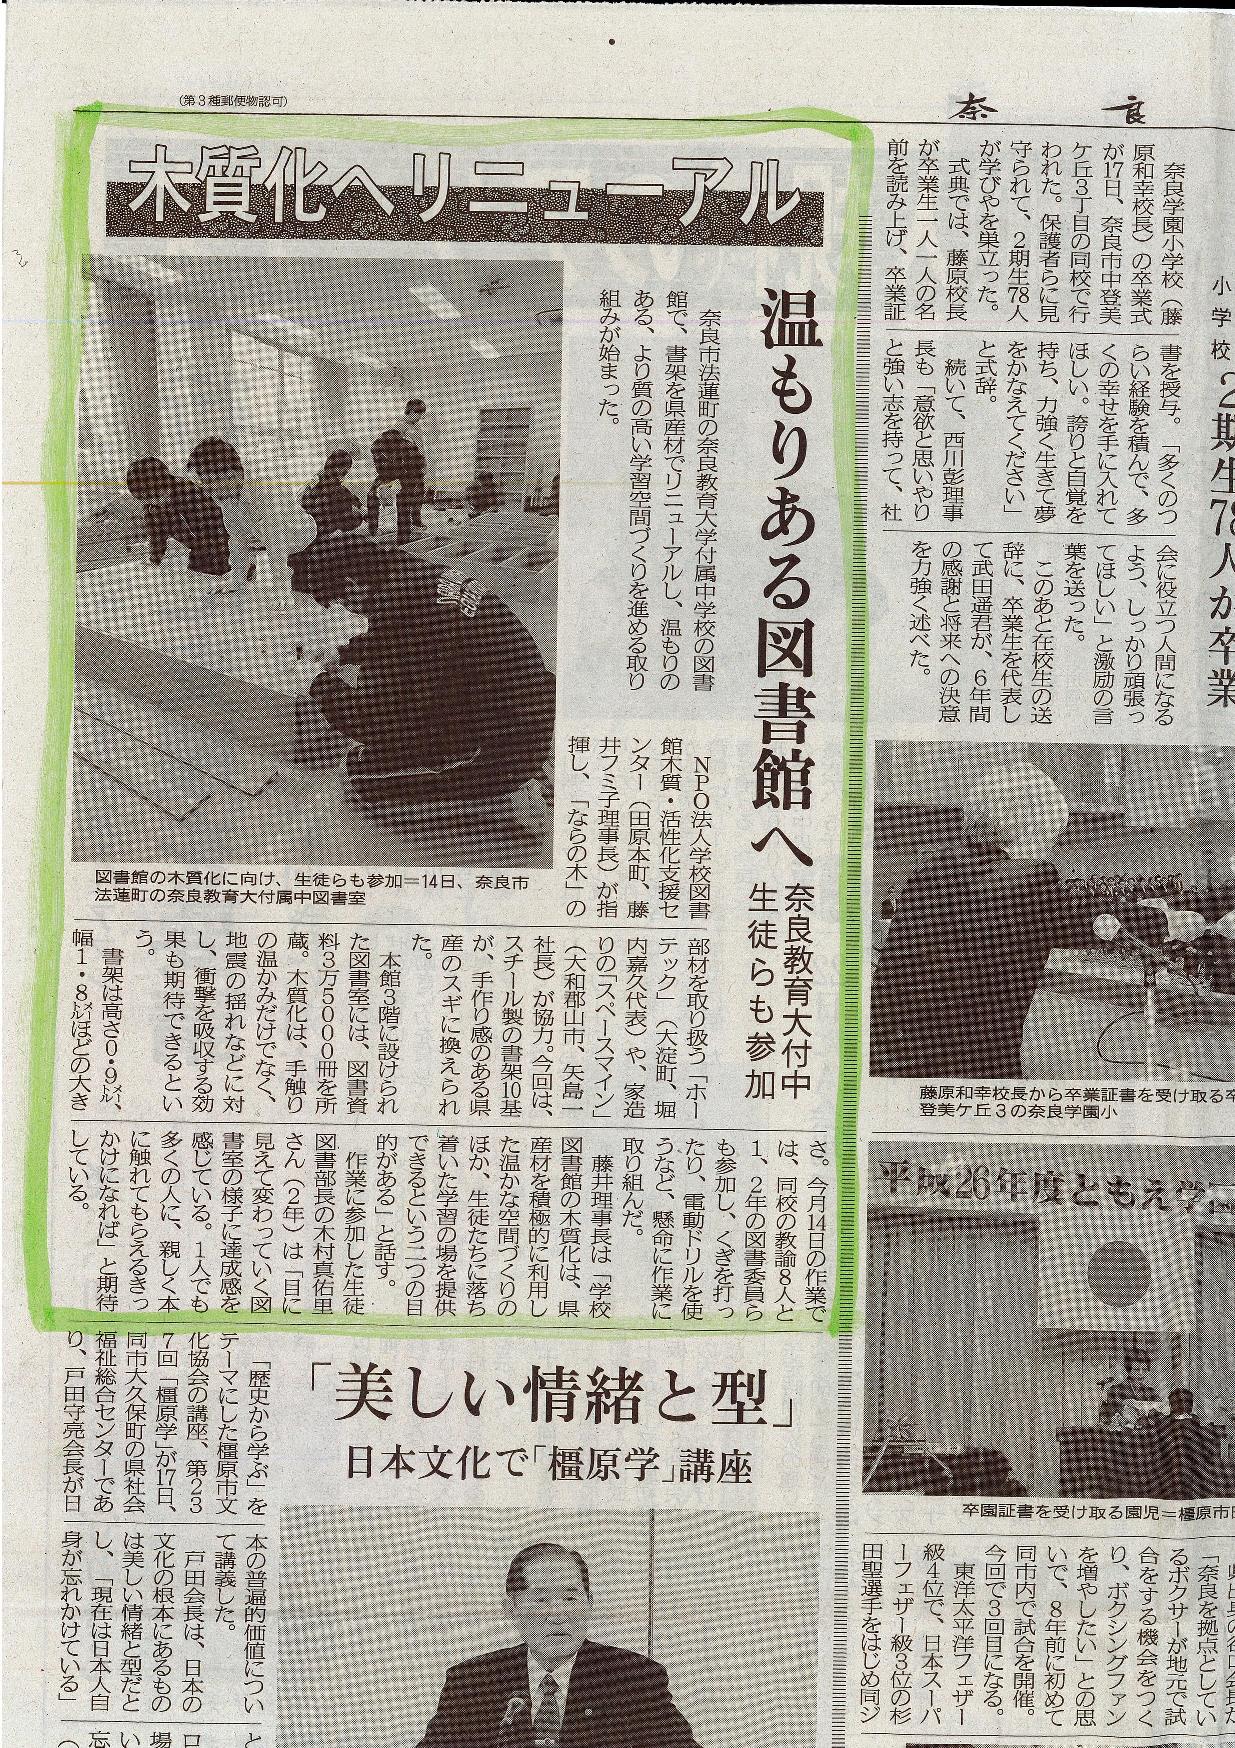 先日行われた学校図書館の木質化の取り組みが奈良新聞に掲載されました